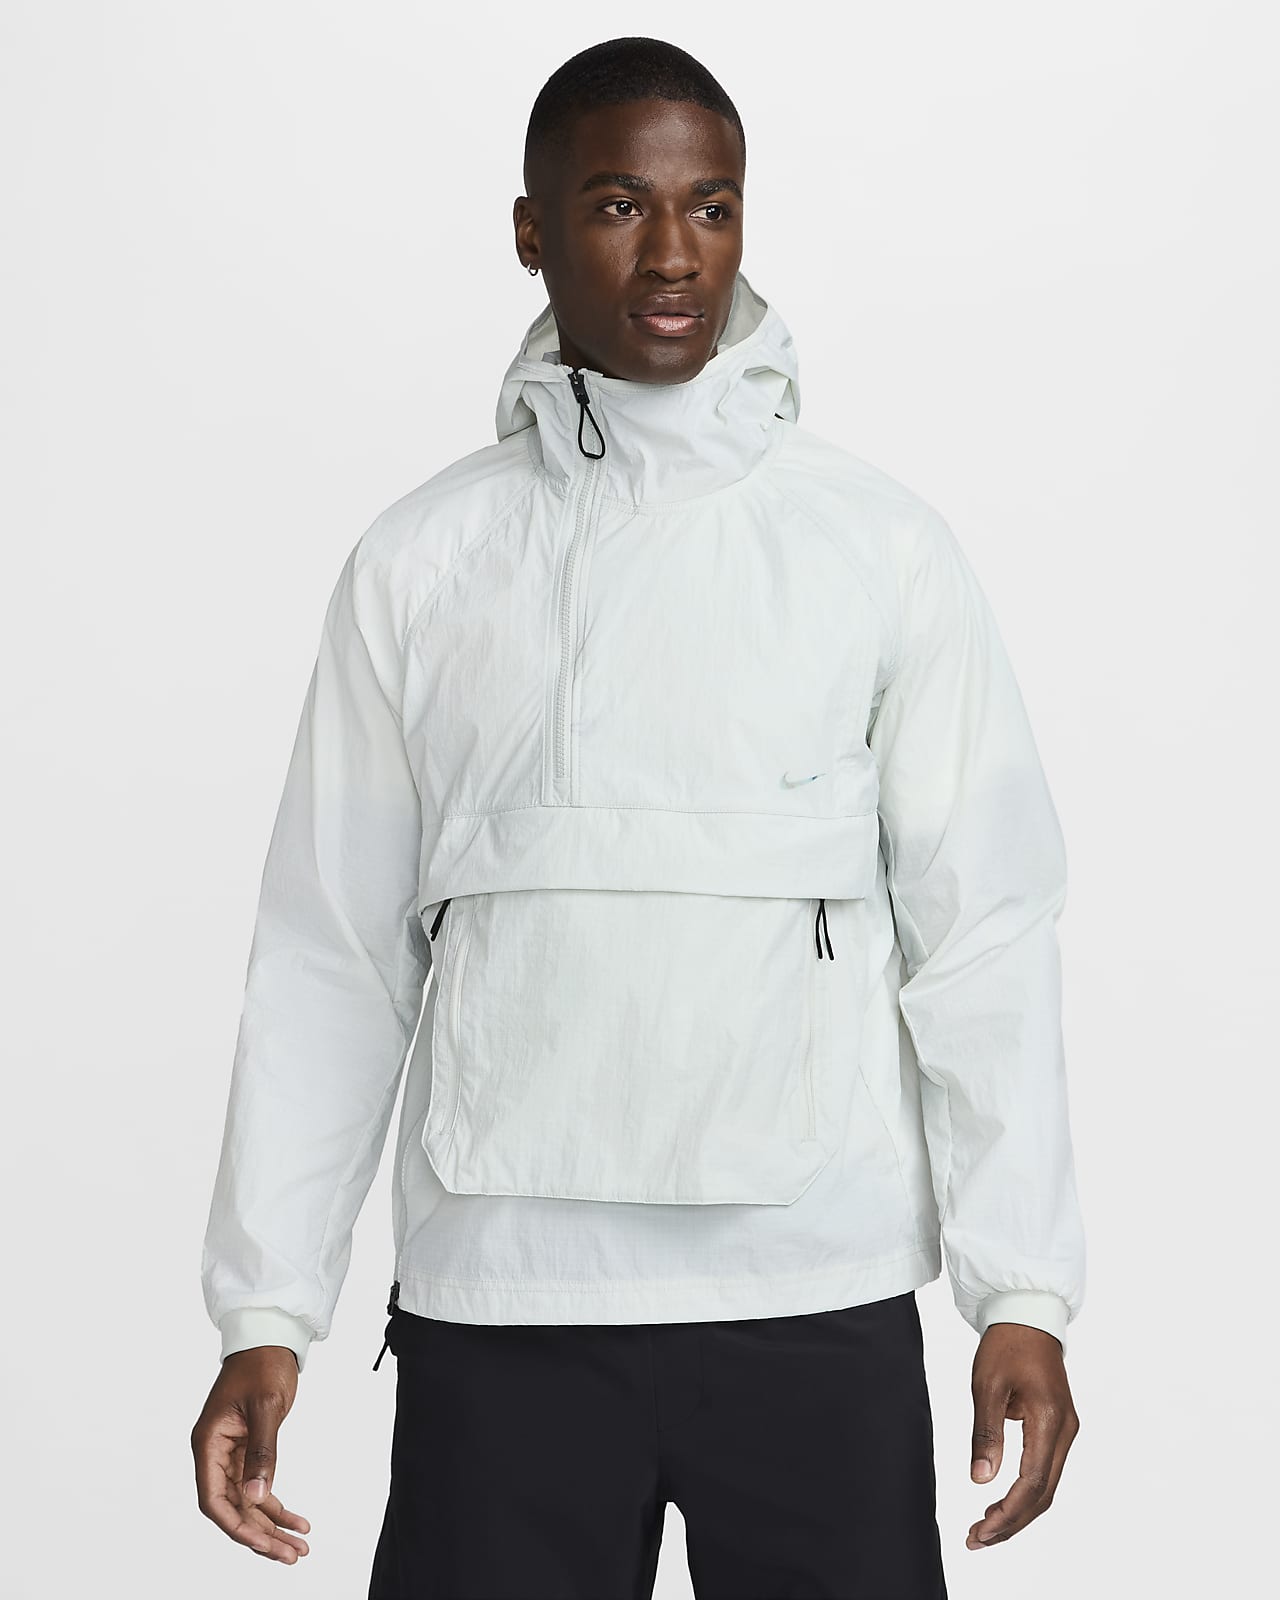 Nike A.P.S. Męska lekka uniwersalna kurtka chroniąca przed deszczem i promieniowaniem UV